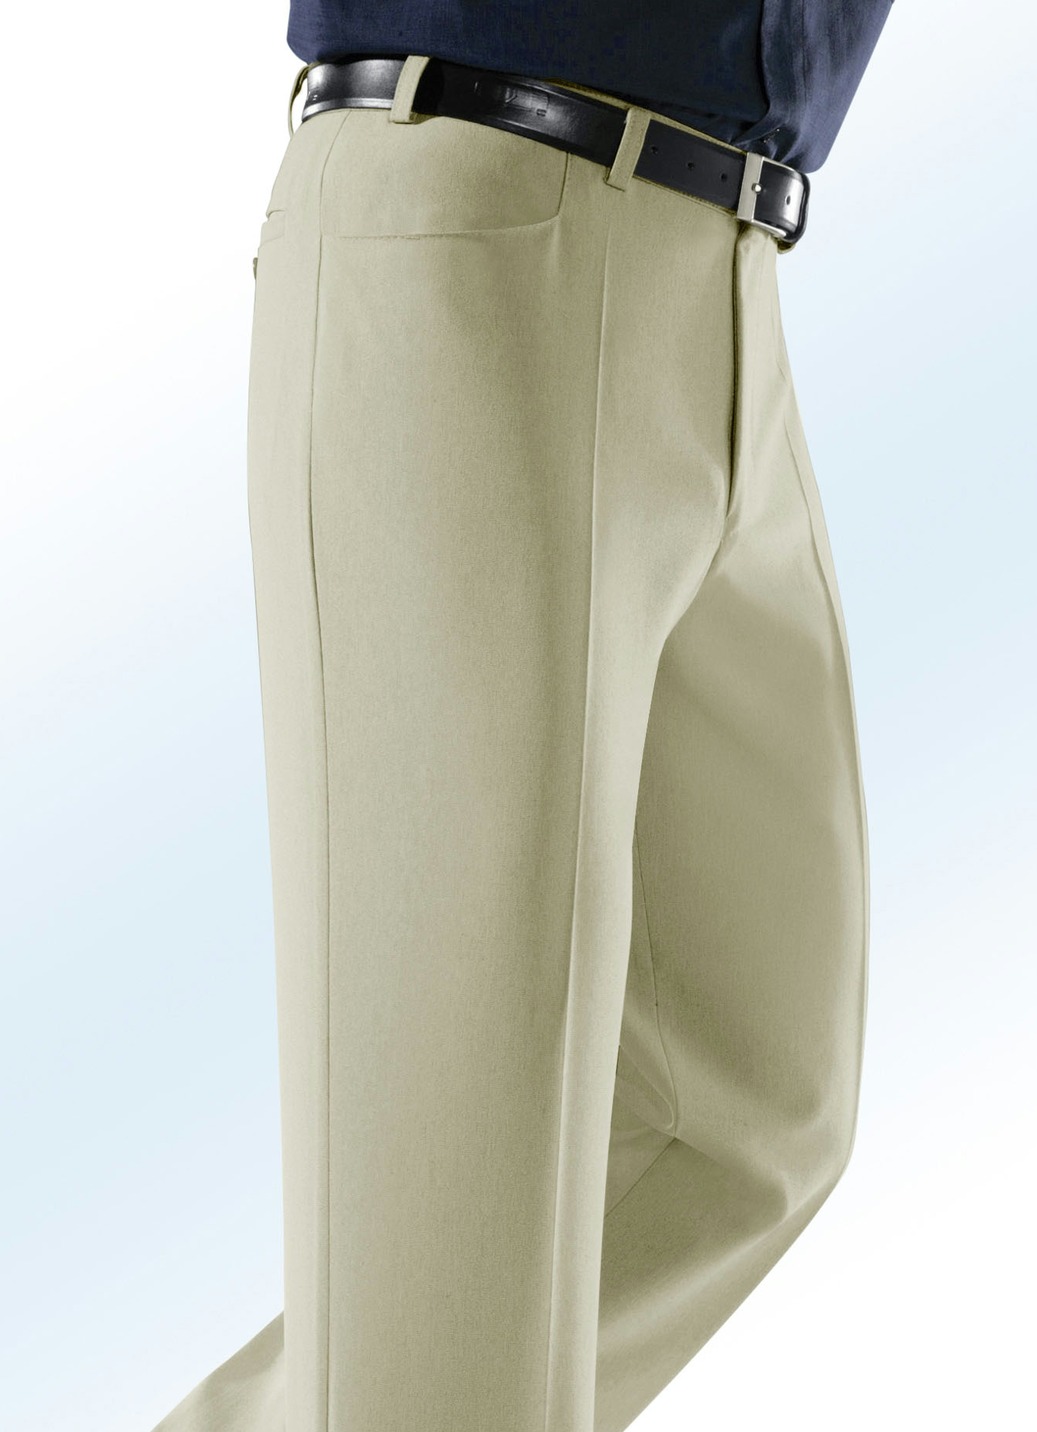 „Klaus Modelle“-Hose mit Seitentaschen, Sand, Größe 30 von KLAUS MODELLE